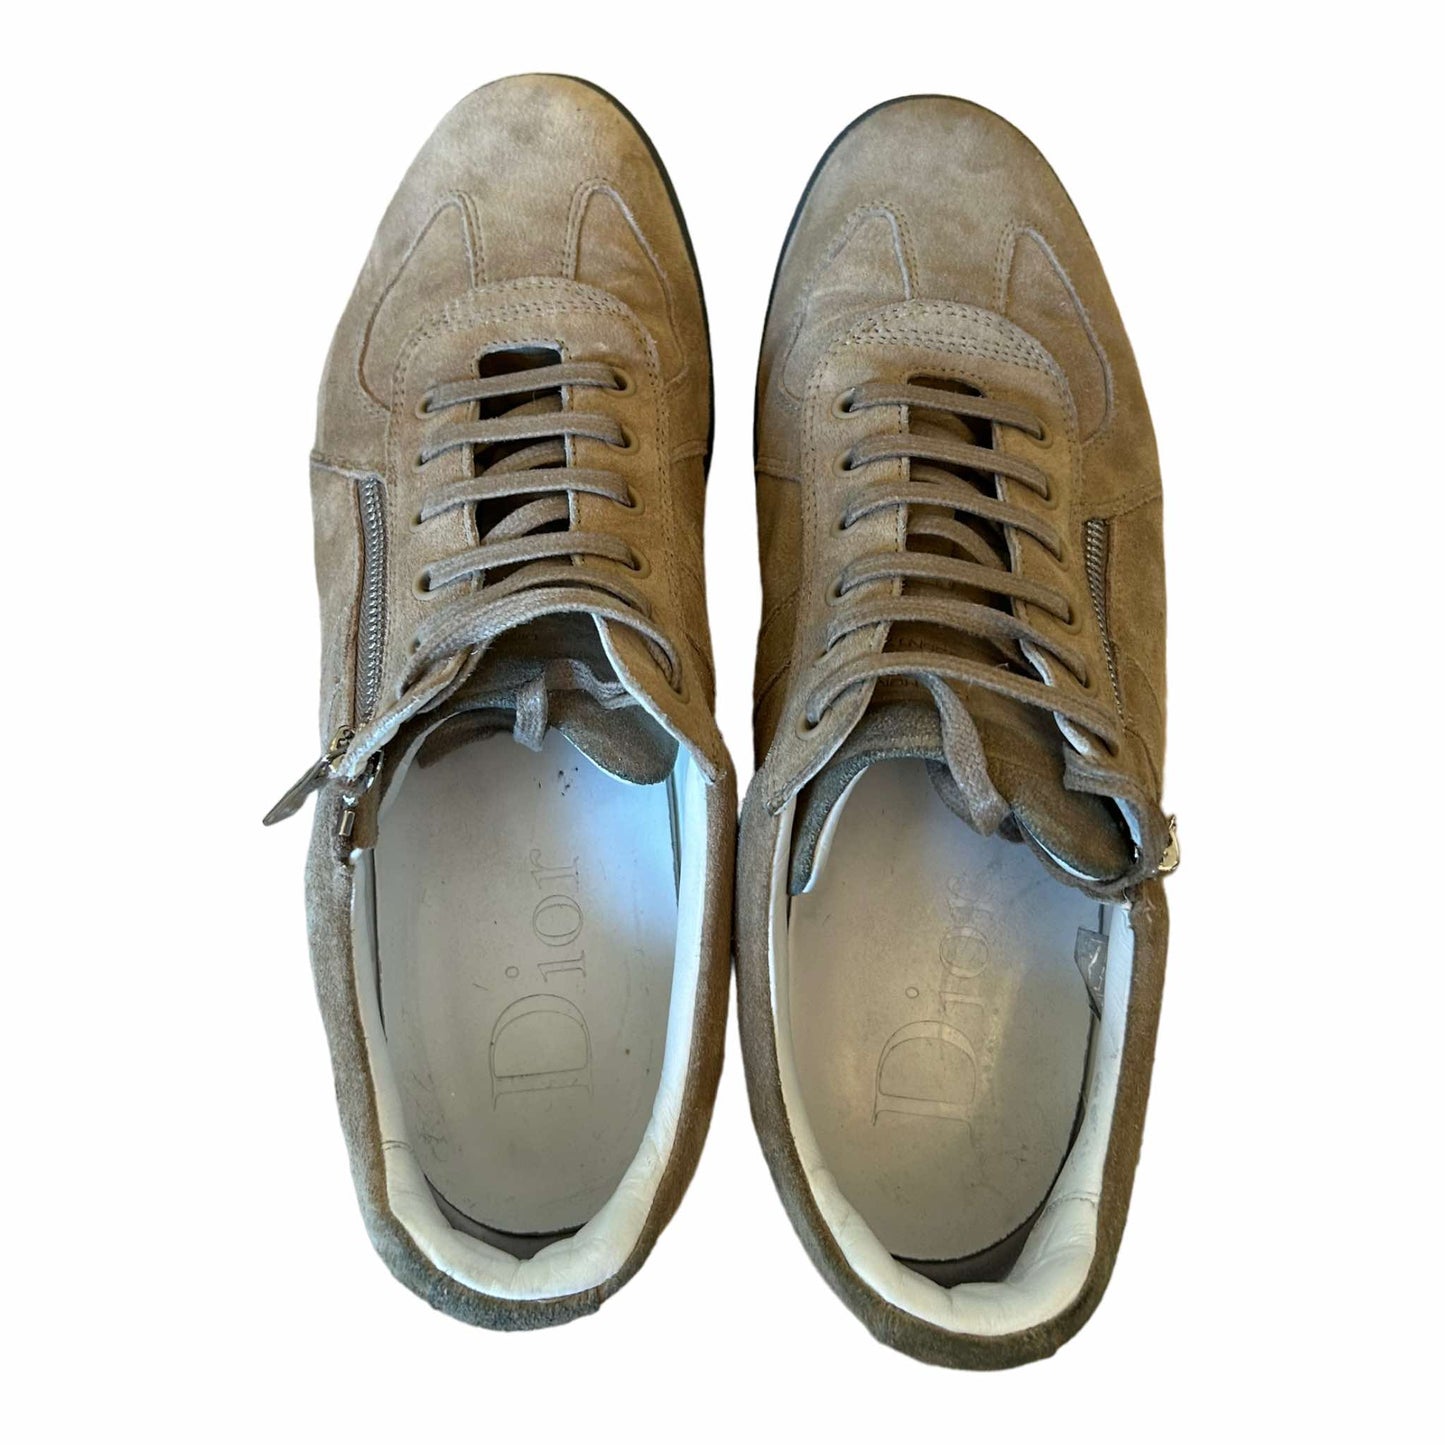 Dior Homme Suede Sneakers - 41.5 EU